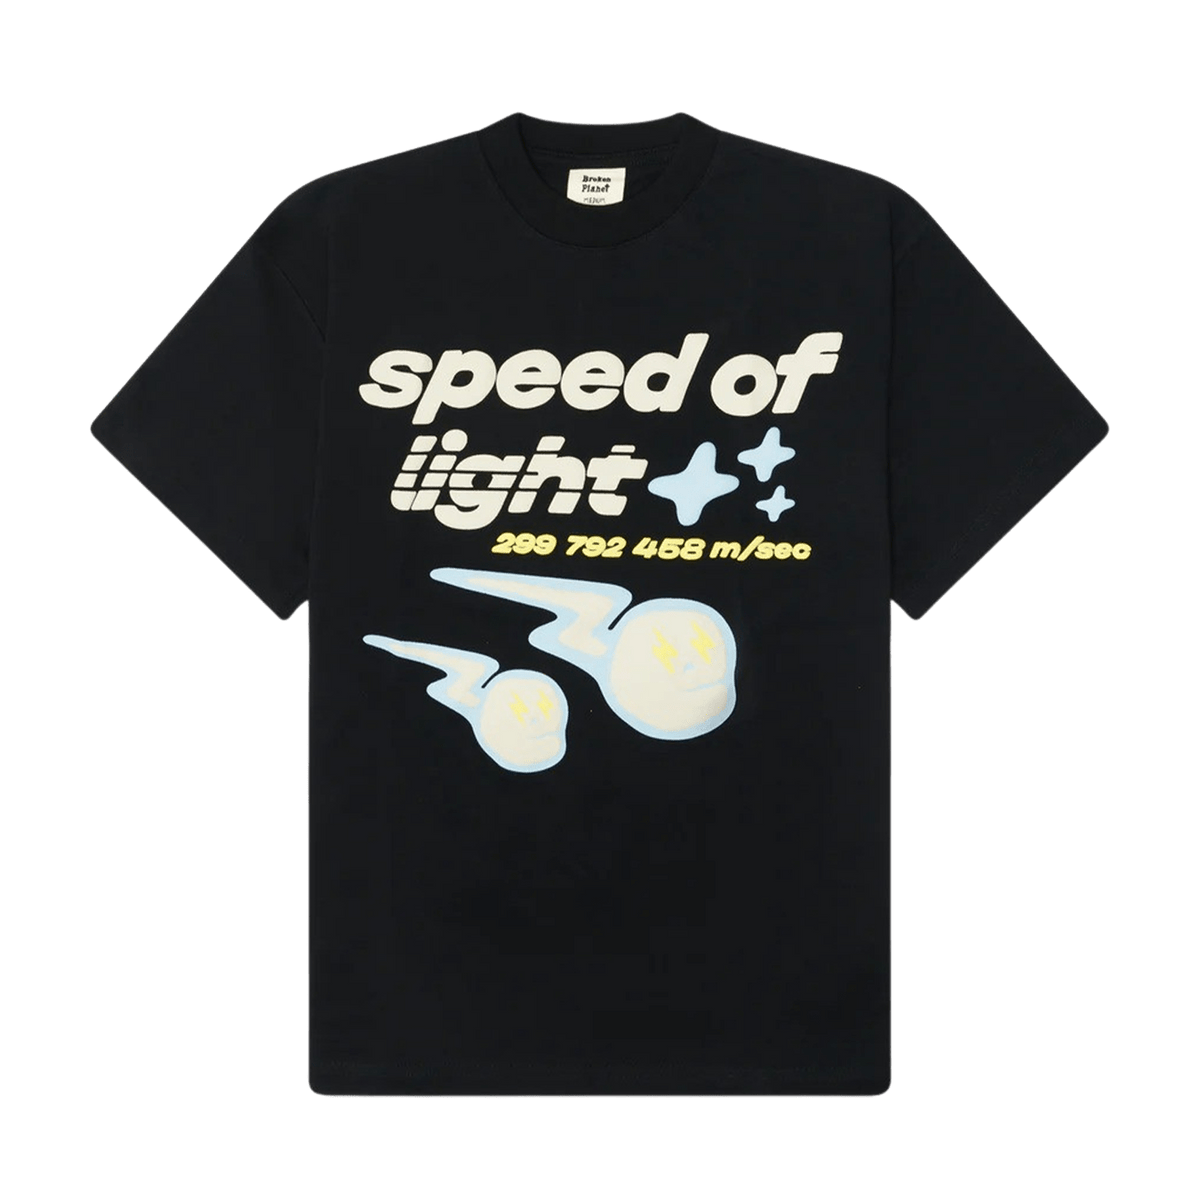 Broken Planet Market T-Shirt 'Speed Of Light' - Midnight Black - Kick Game